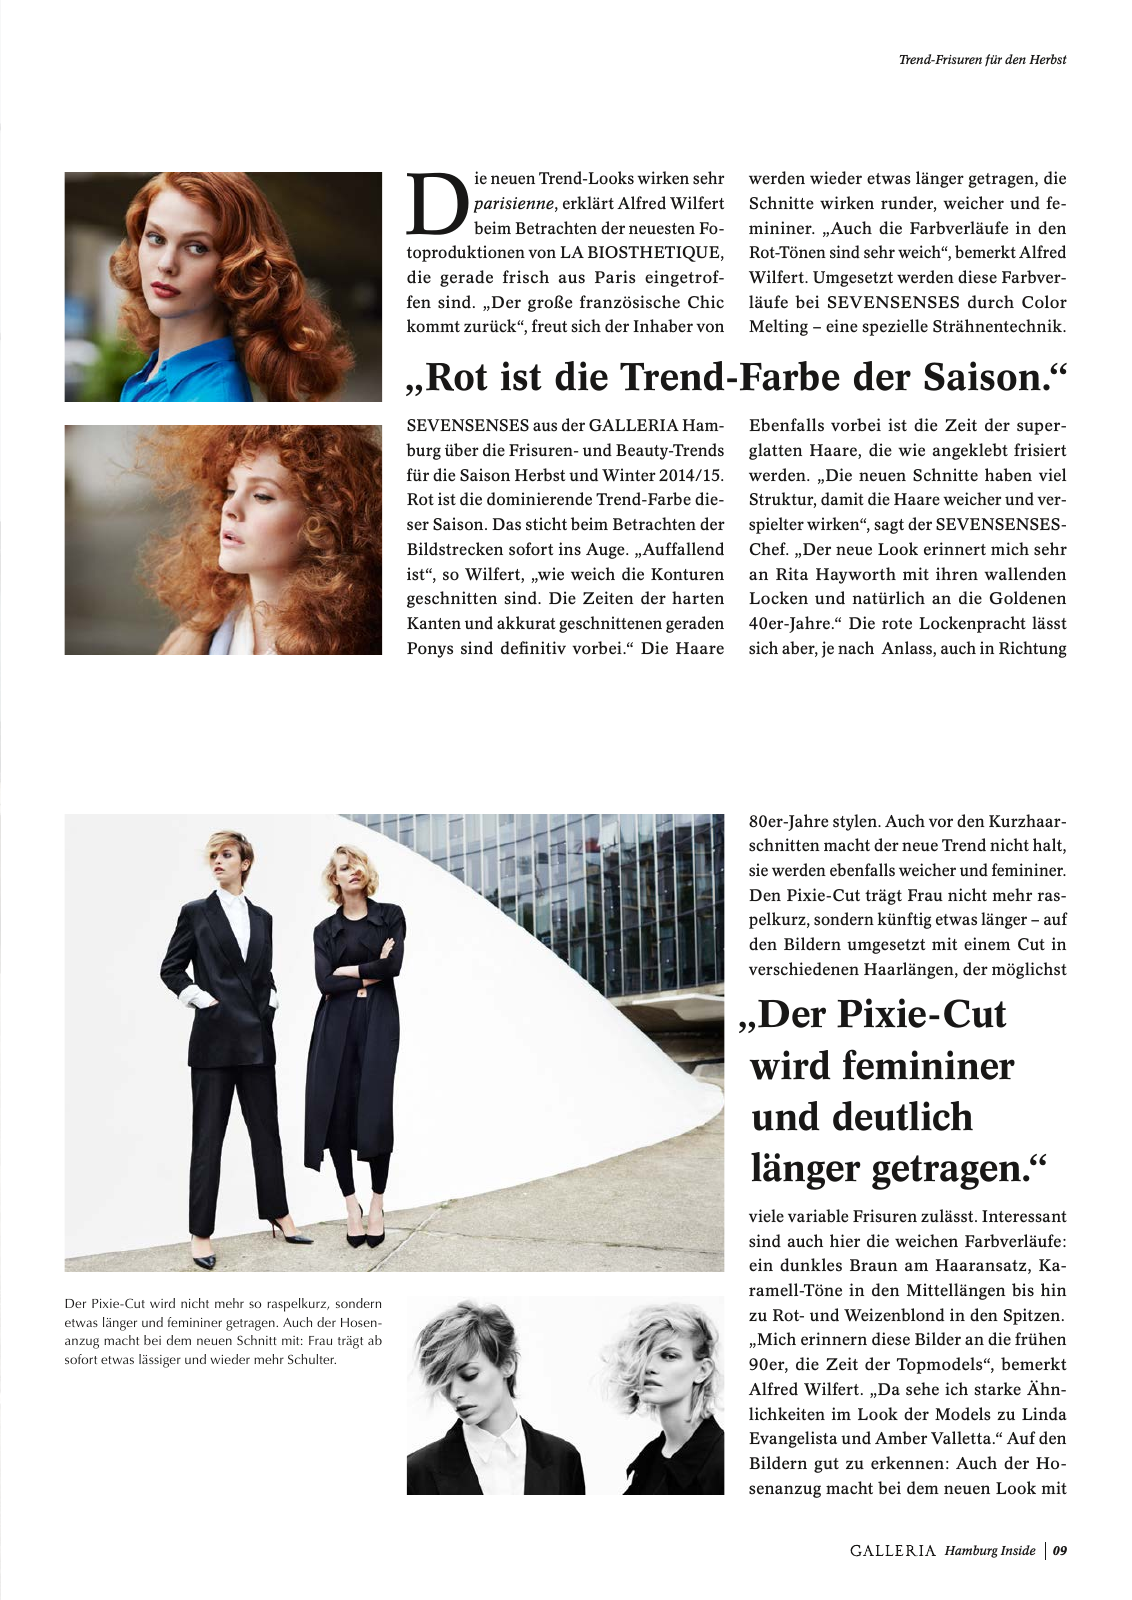 Vorschau GALLERIA Magazin Hamburg Inside 1 Seite 9